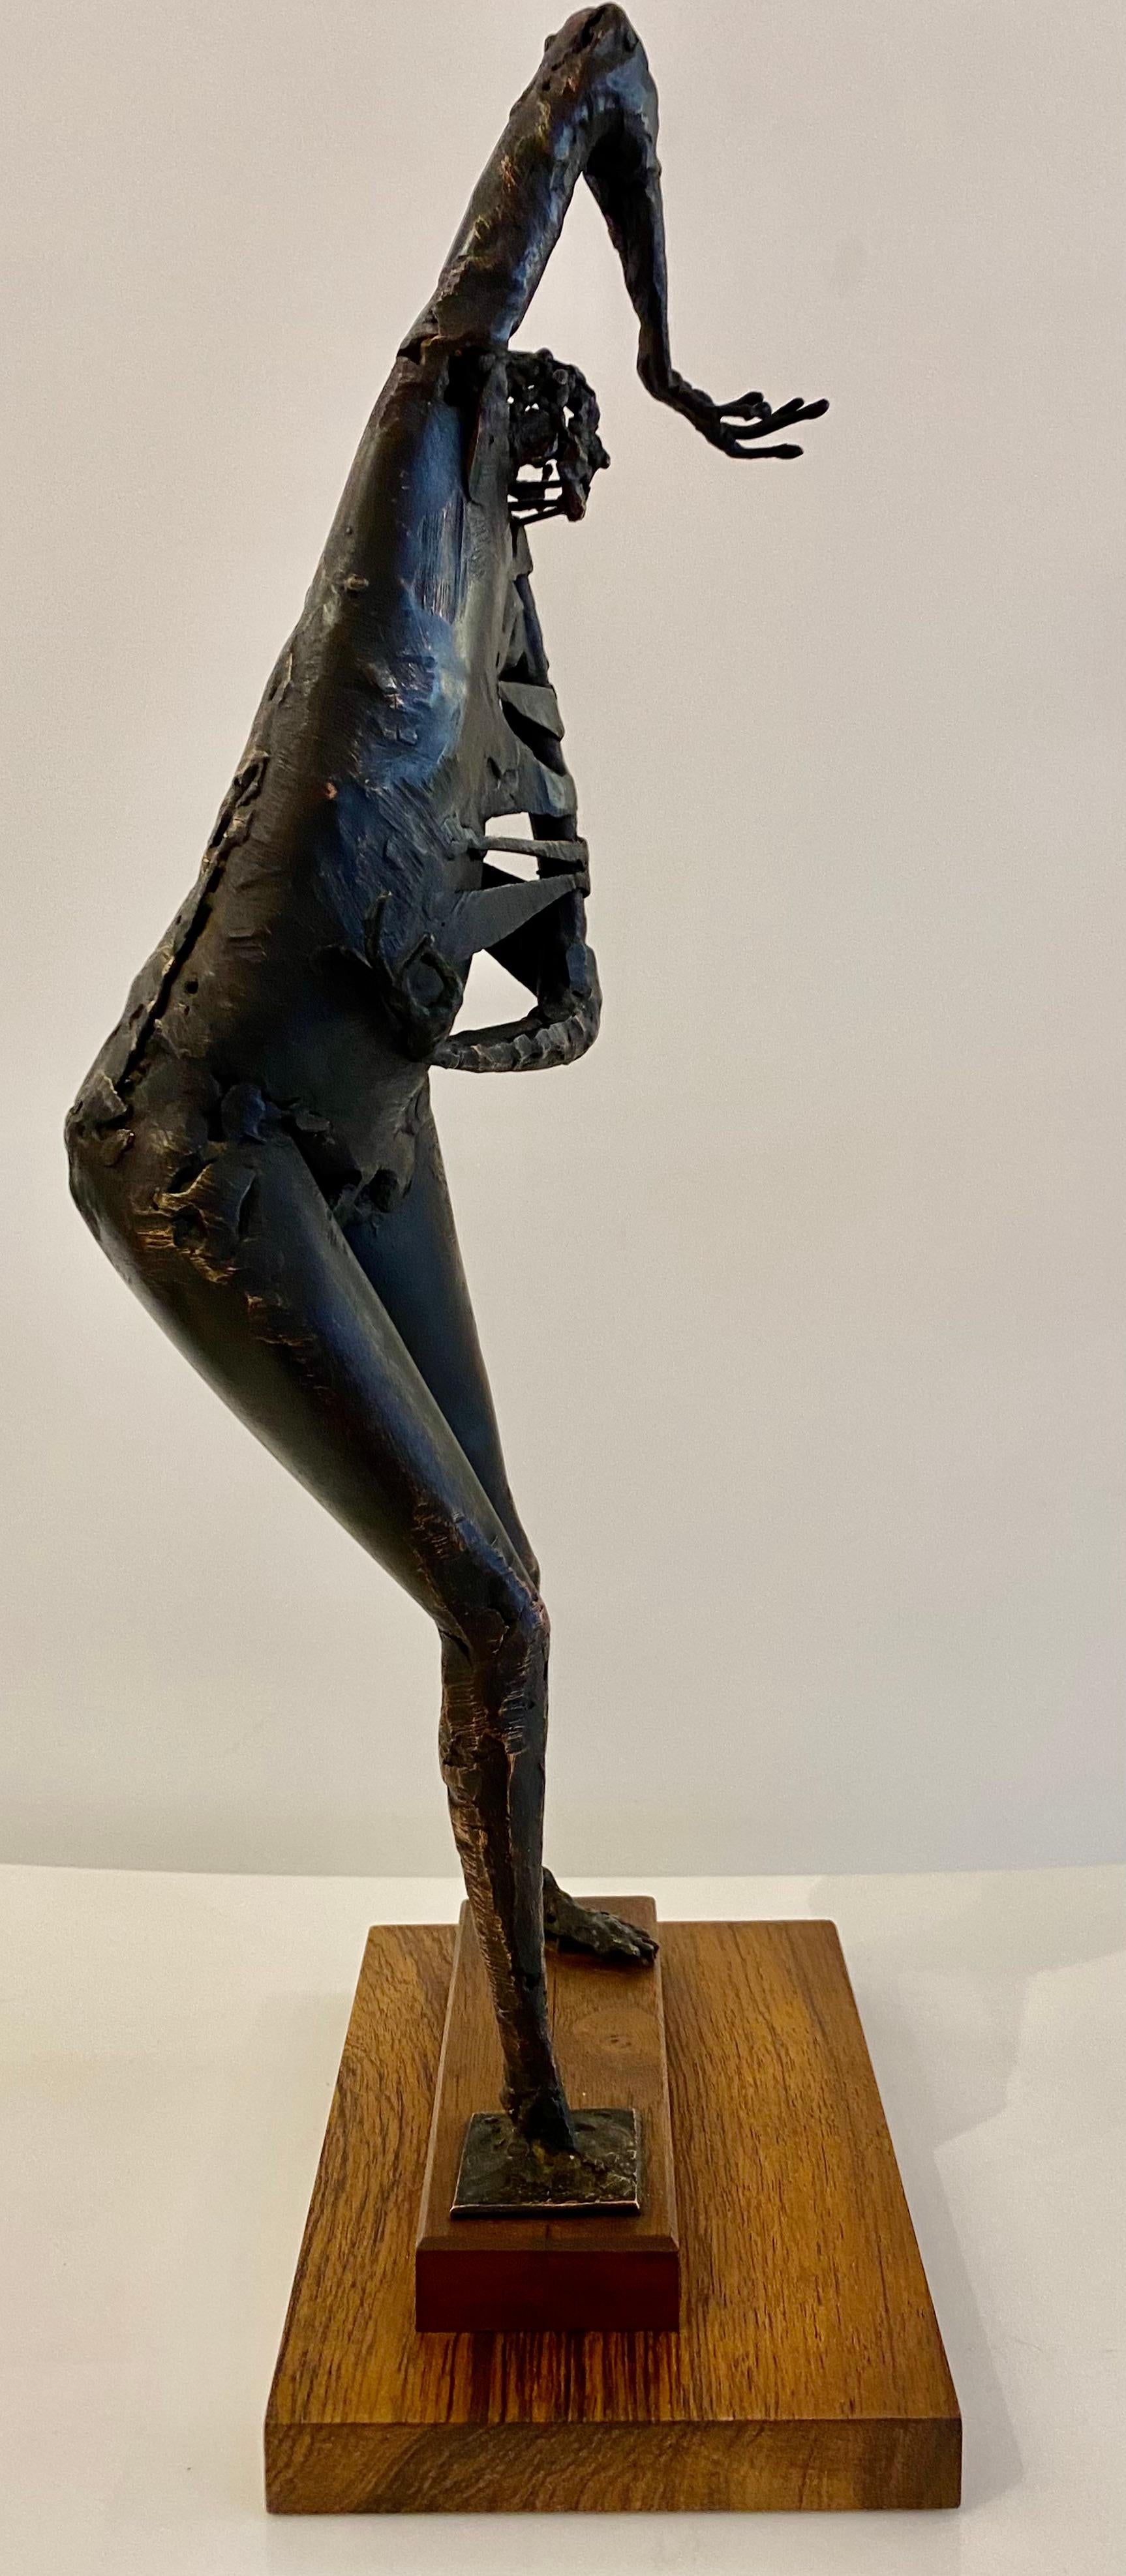 Cette figure abstraite en bronze est l'œuvre de l'artiste californien Robert Stoller (1936-). De loin, la position et la texture de la figure ressortent de cette pièce. La sculpture est patinée dans une riche finition de bronze hépatique et est